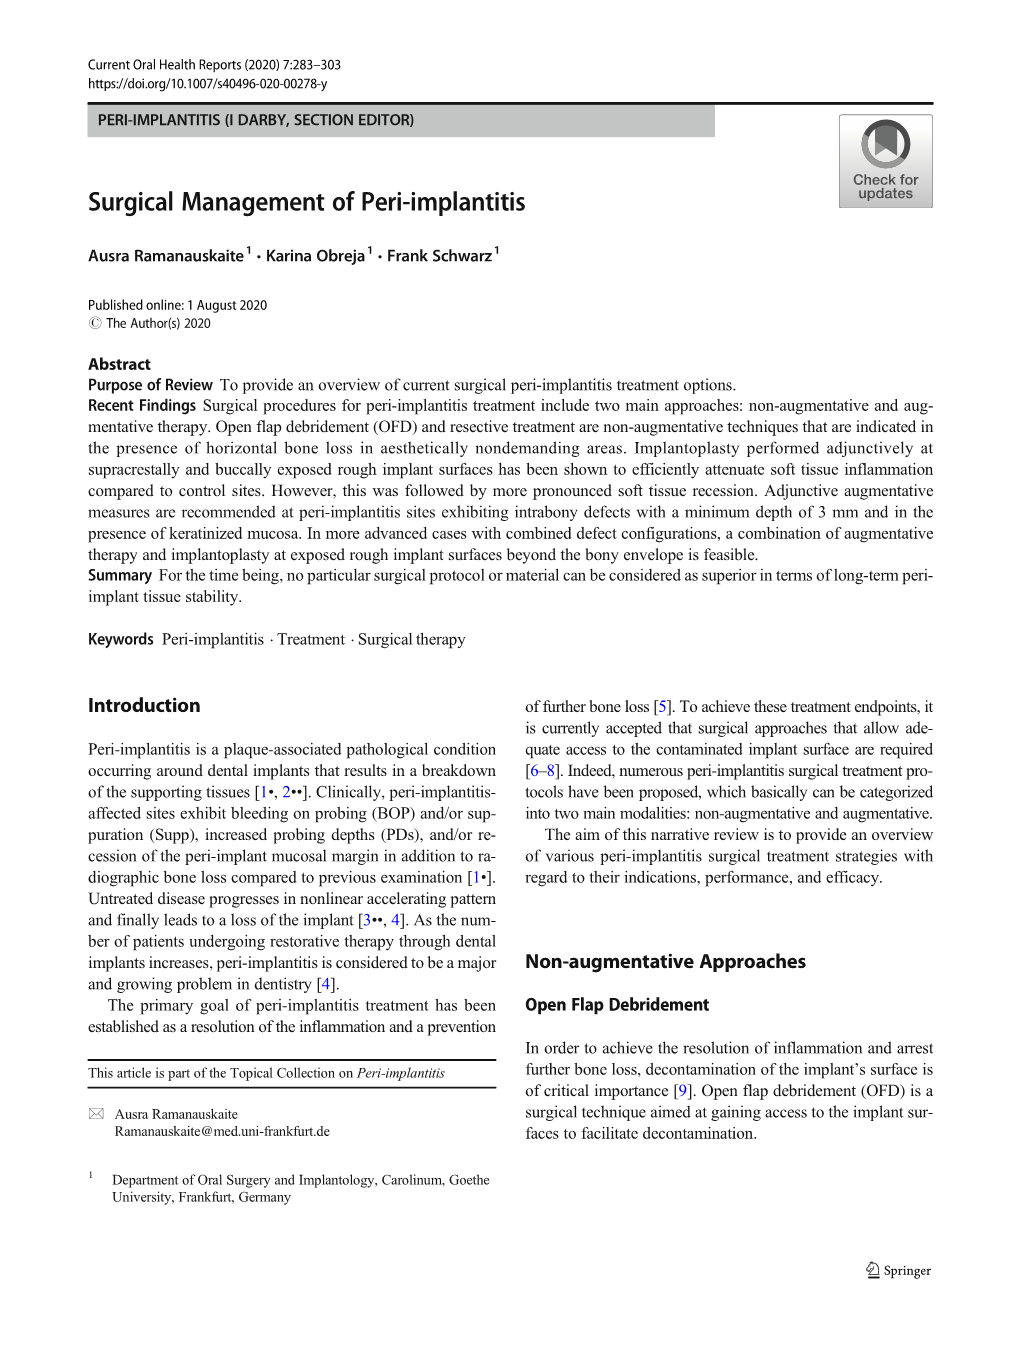 Surgical Management of Peri-Implantitis